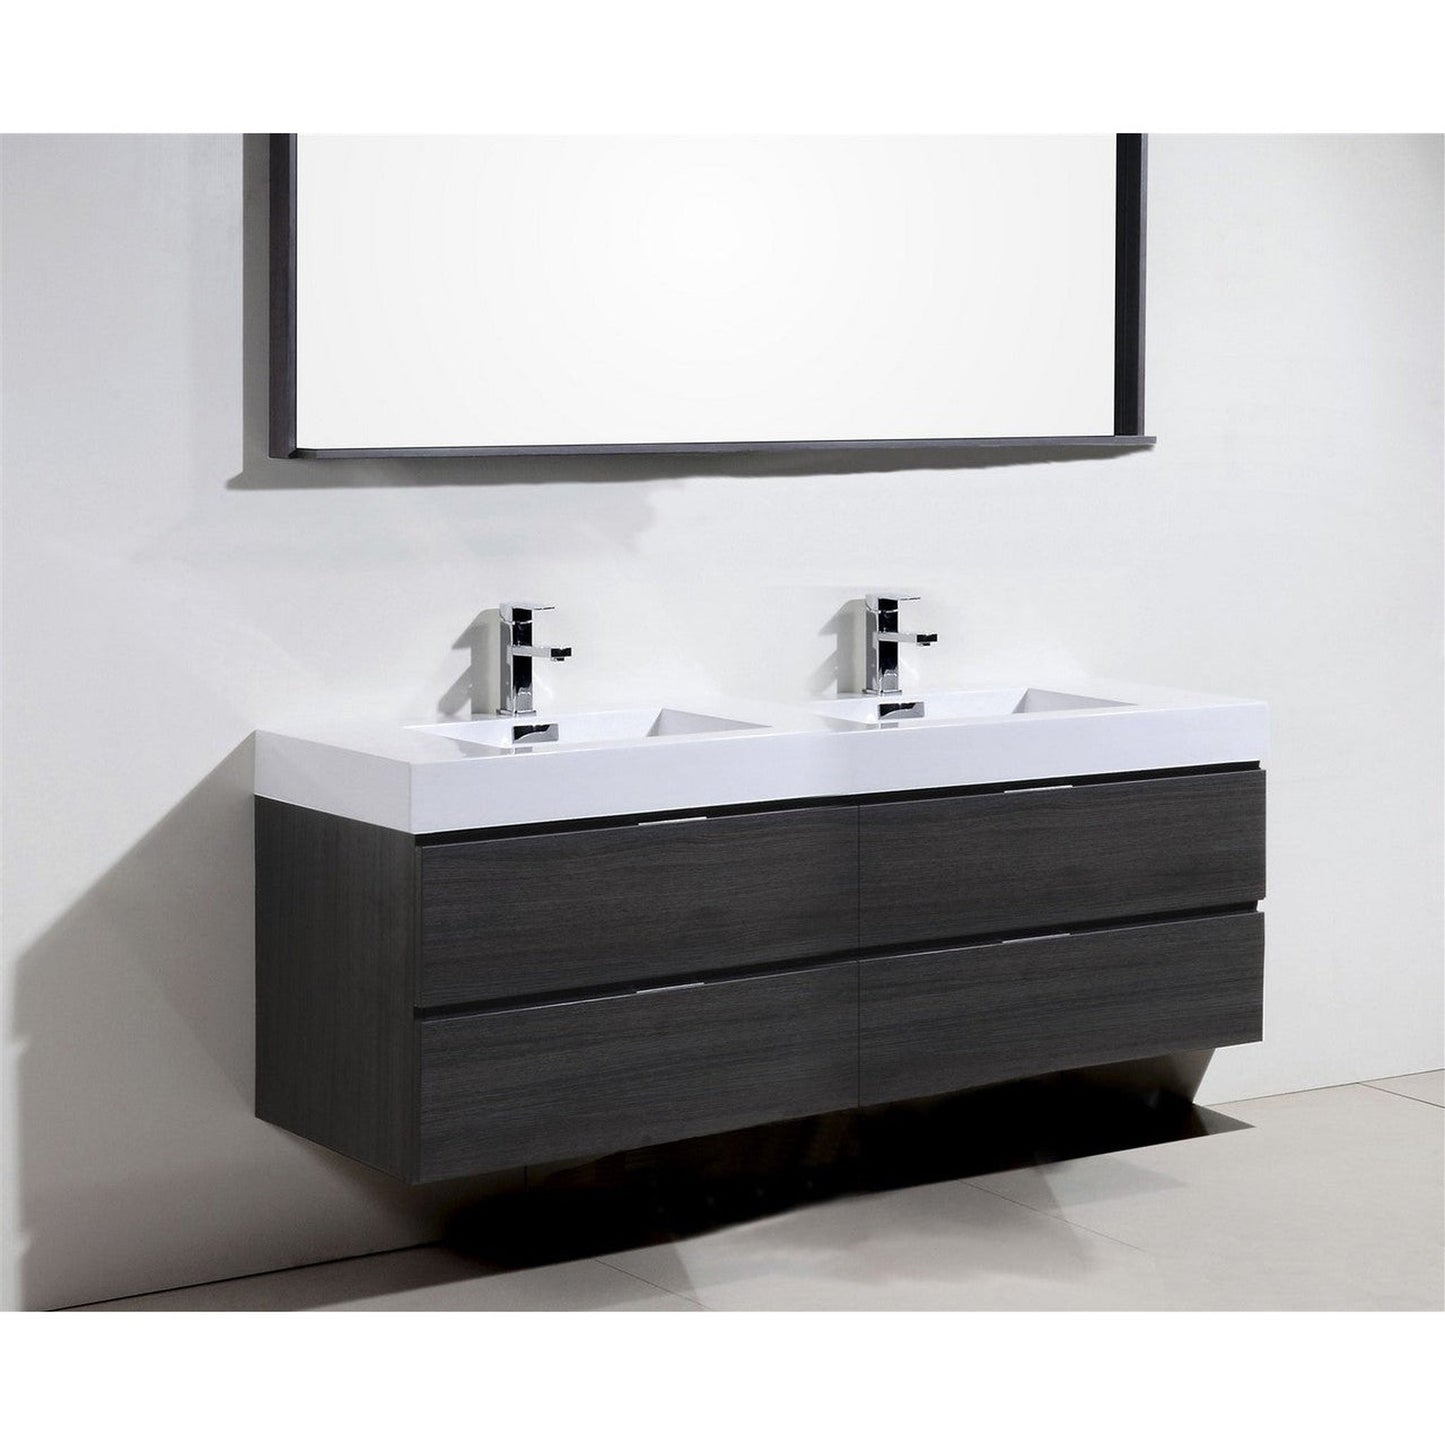 KubeBath Bliss 80" Gray Oak Wall-Mounted Modern Bathroom Vanity With Double Integrated Acrylic Sink With Overflow